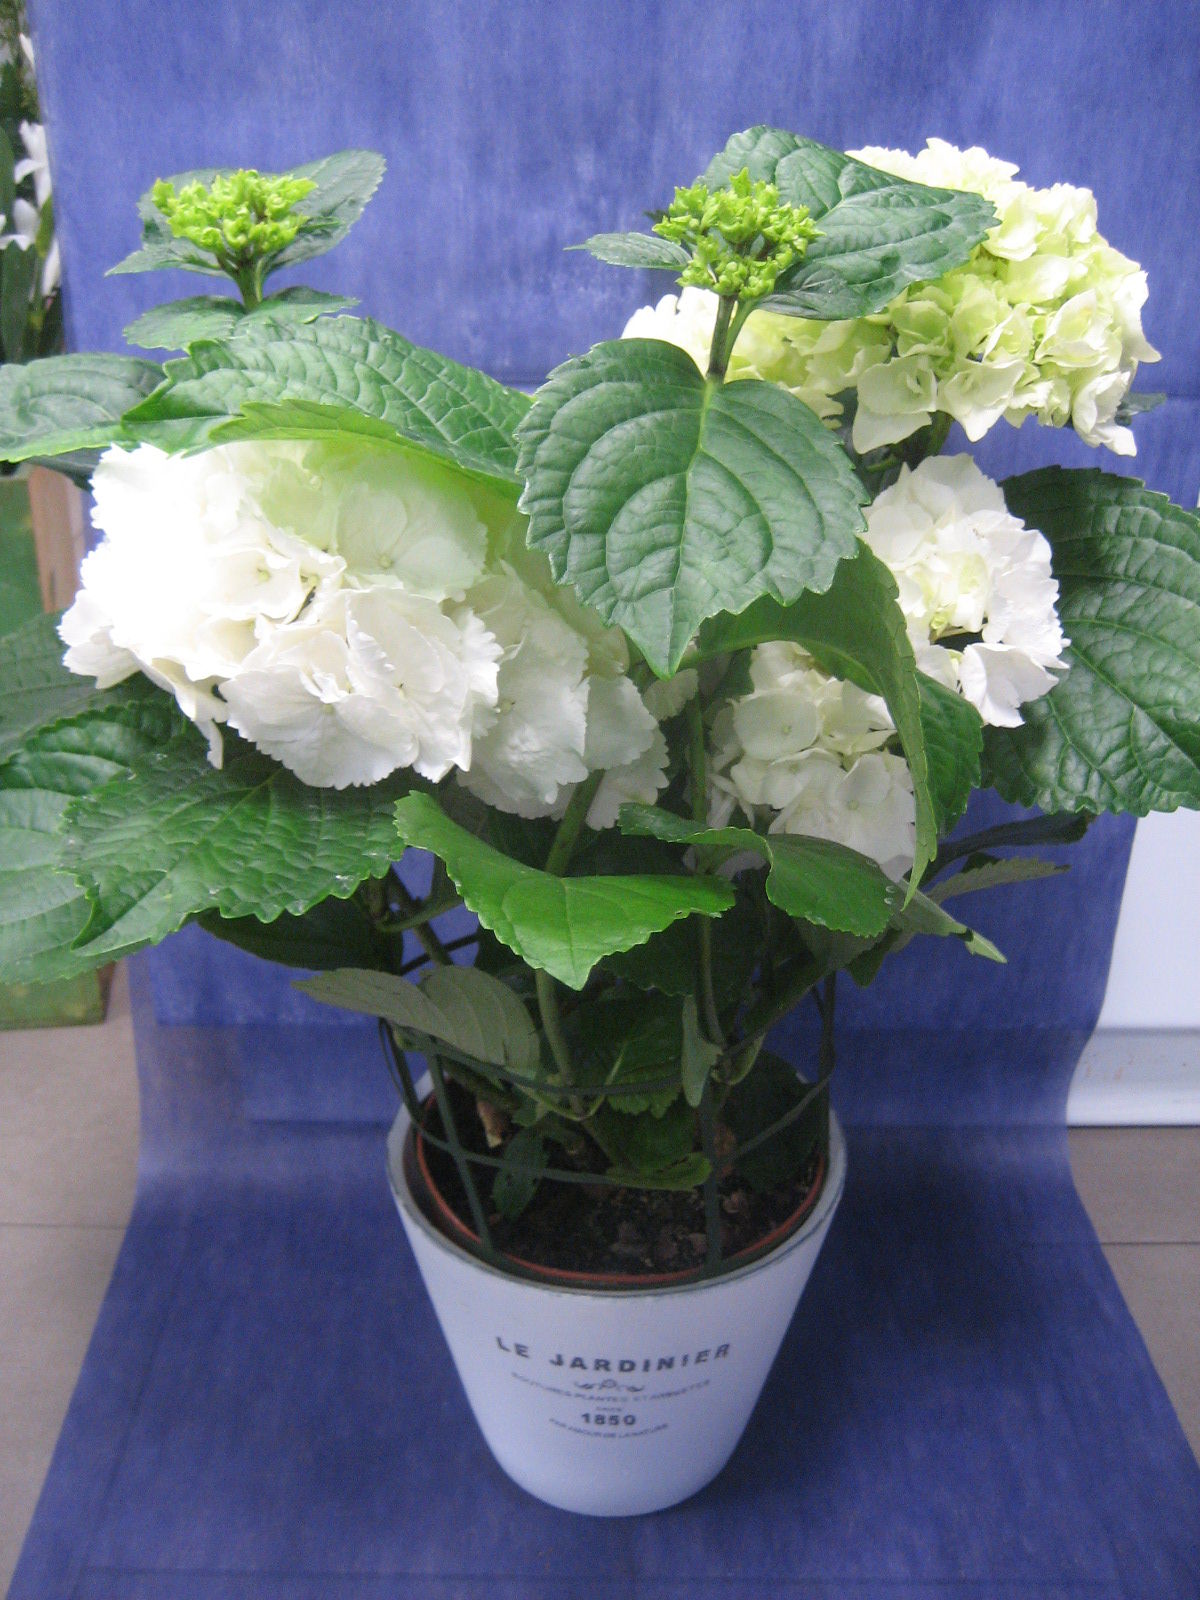 Hortensia Blanca: Nuestras flores de Bouquet Flores y Plantas